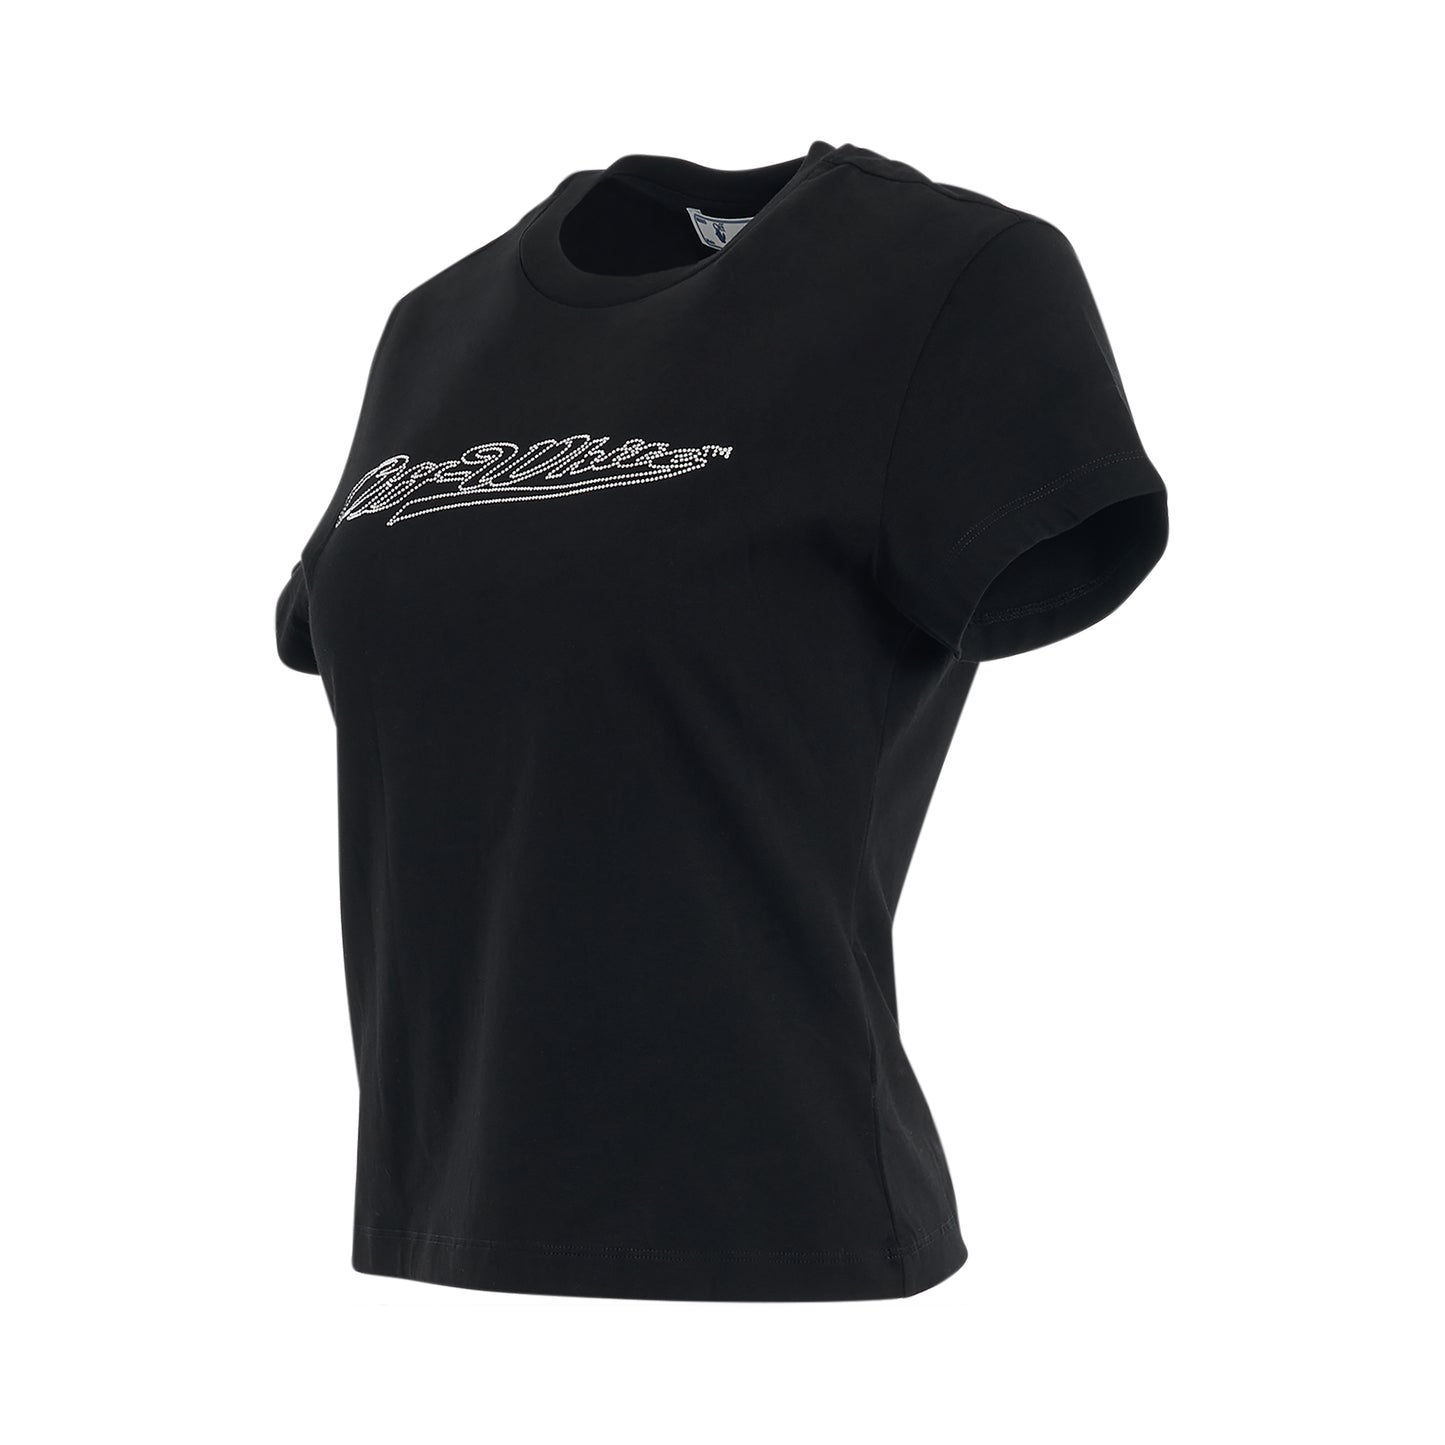 Bling Baseball Fitted T-Shirt in Black/White